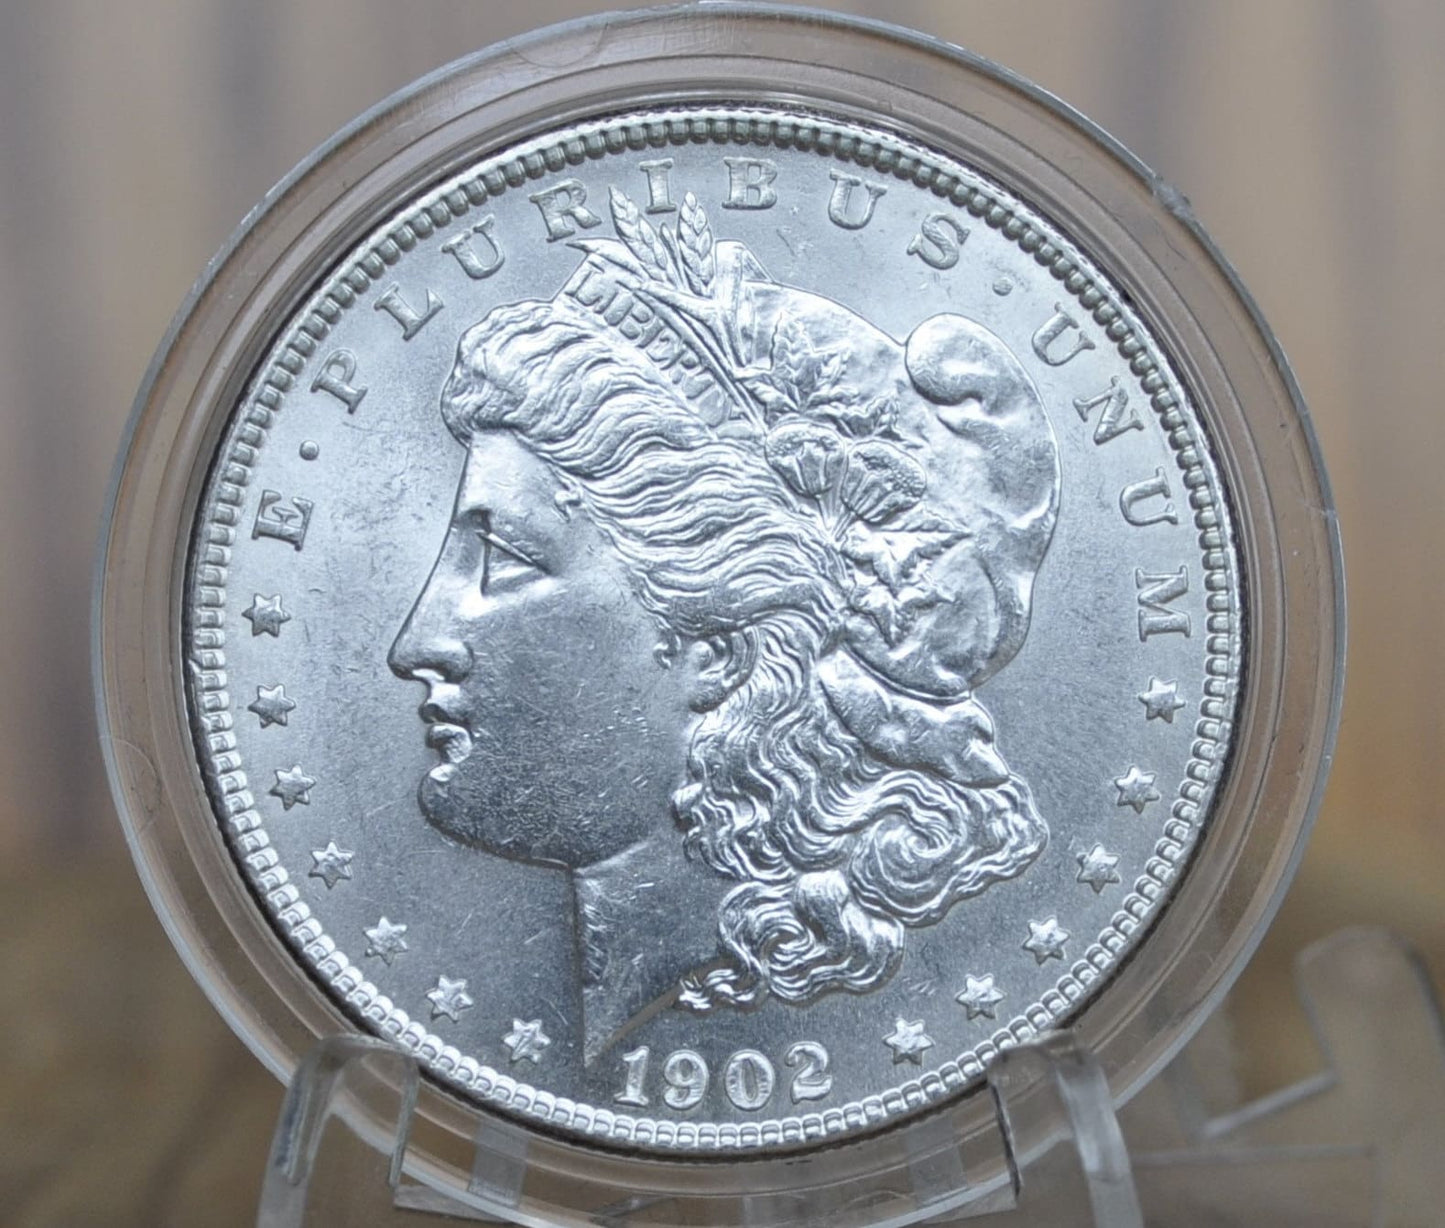 1902 Morgan Silver Dollar - MS62 (Uncirculated), Beautiful Mint Luster - 1902-P Morgan Dollar - 1902 Silver Dollar - No Mint Mark